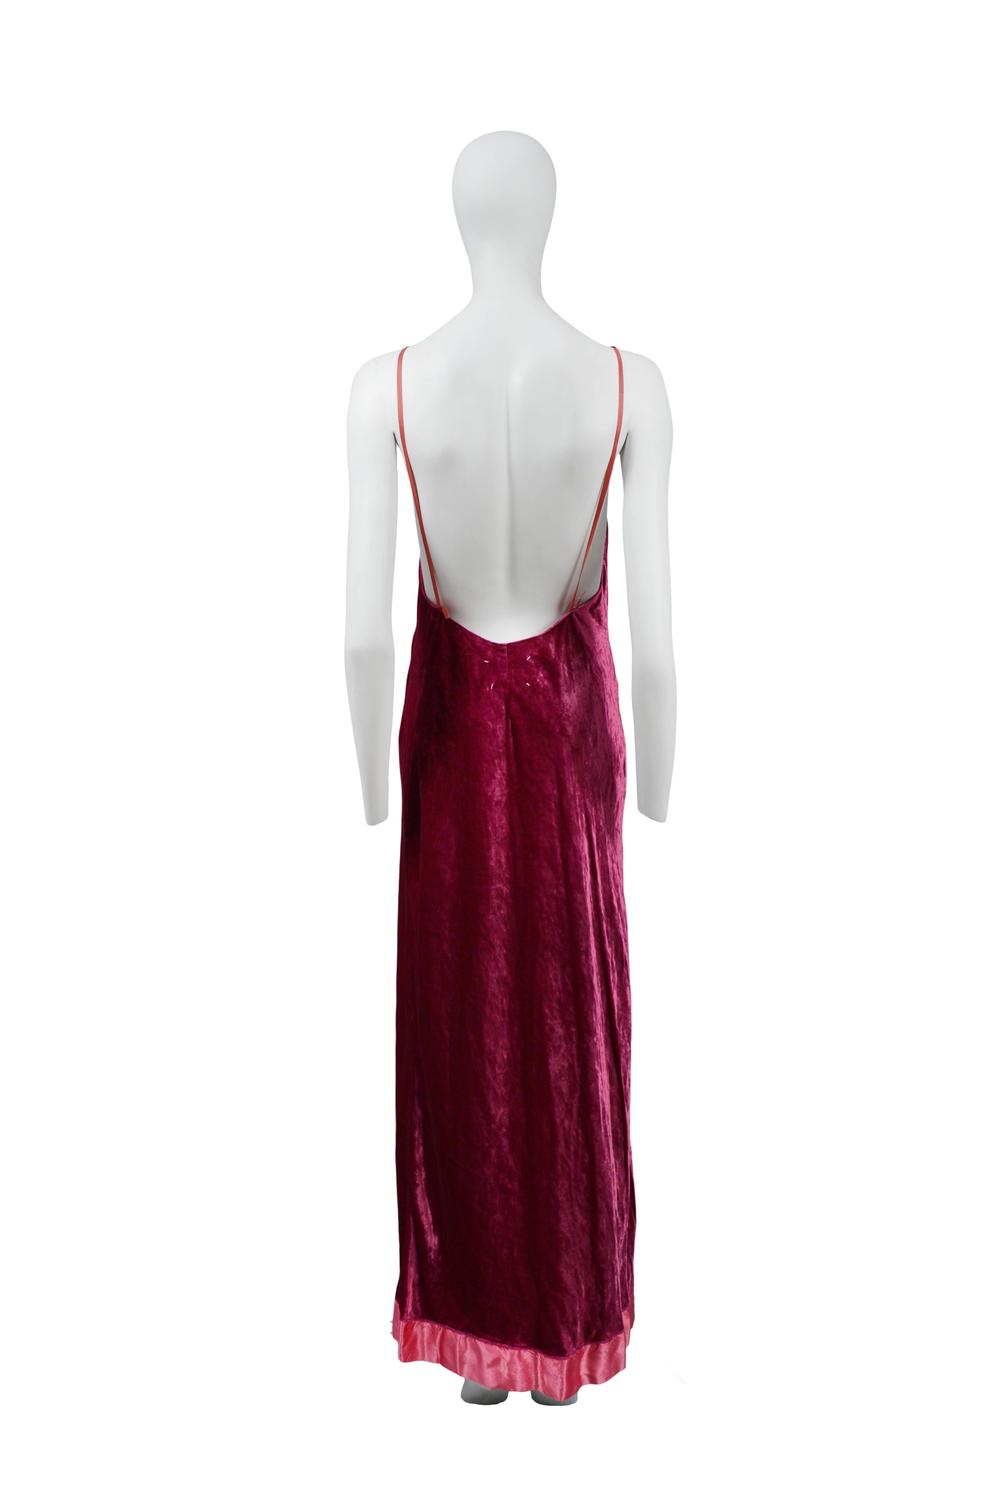 Martin Margiela Pink Velvet Gown 1995 For Sale at 1stdibs